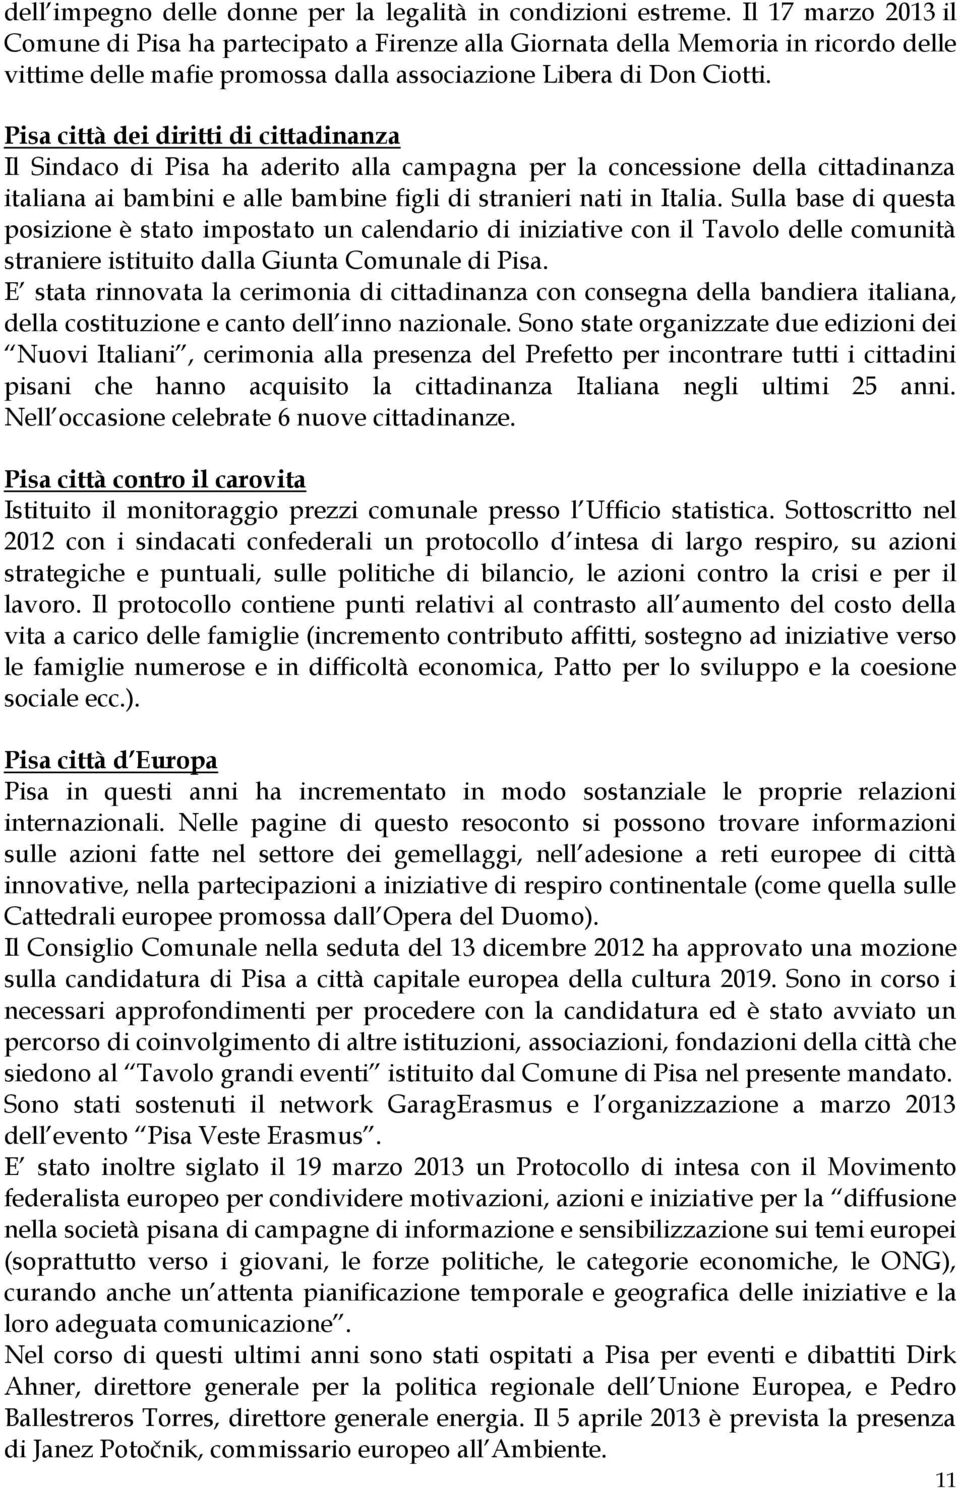 Pisa città dei diritti di cittadinanza Il Sindaco di Pisa ha aderito alla campagna per la concessione della cittadinanza italiana ai bambini e alle bambine figli di stranieri nati in Italia.